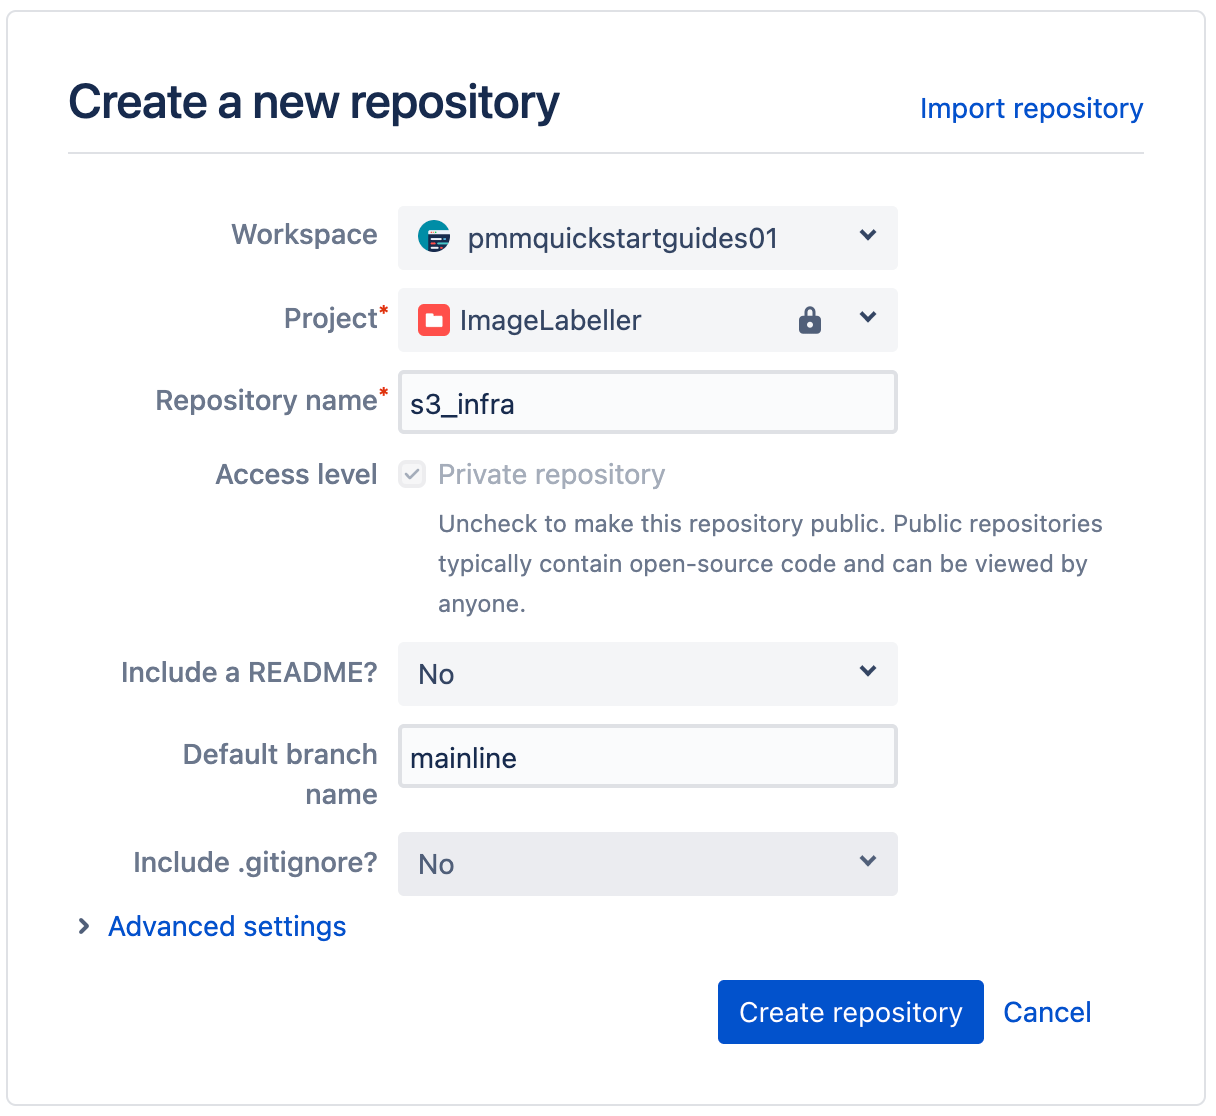 Finestra pop-up per la creazione di un nuovo repository in Bitbucket